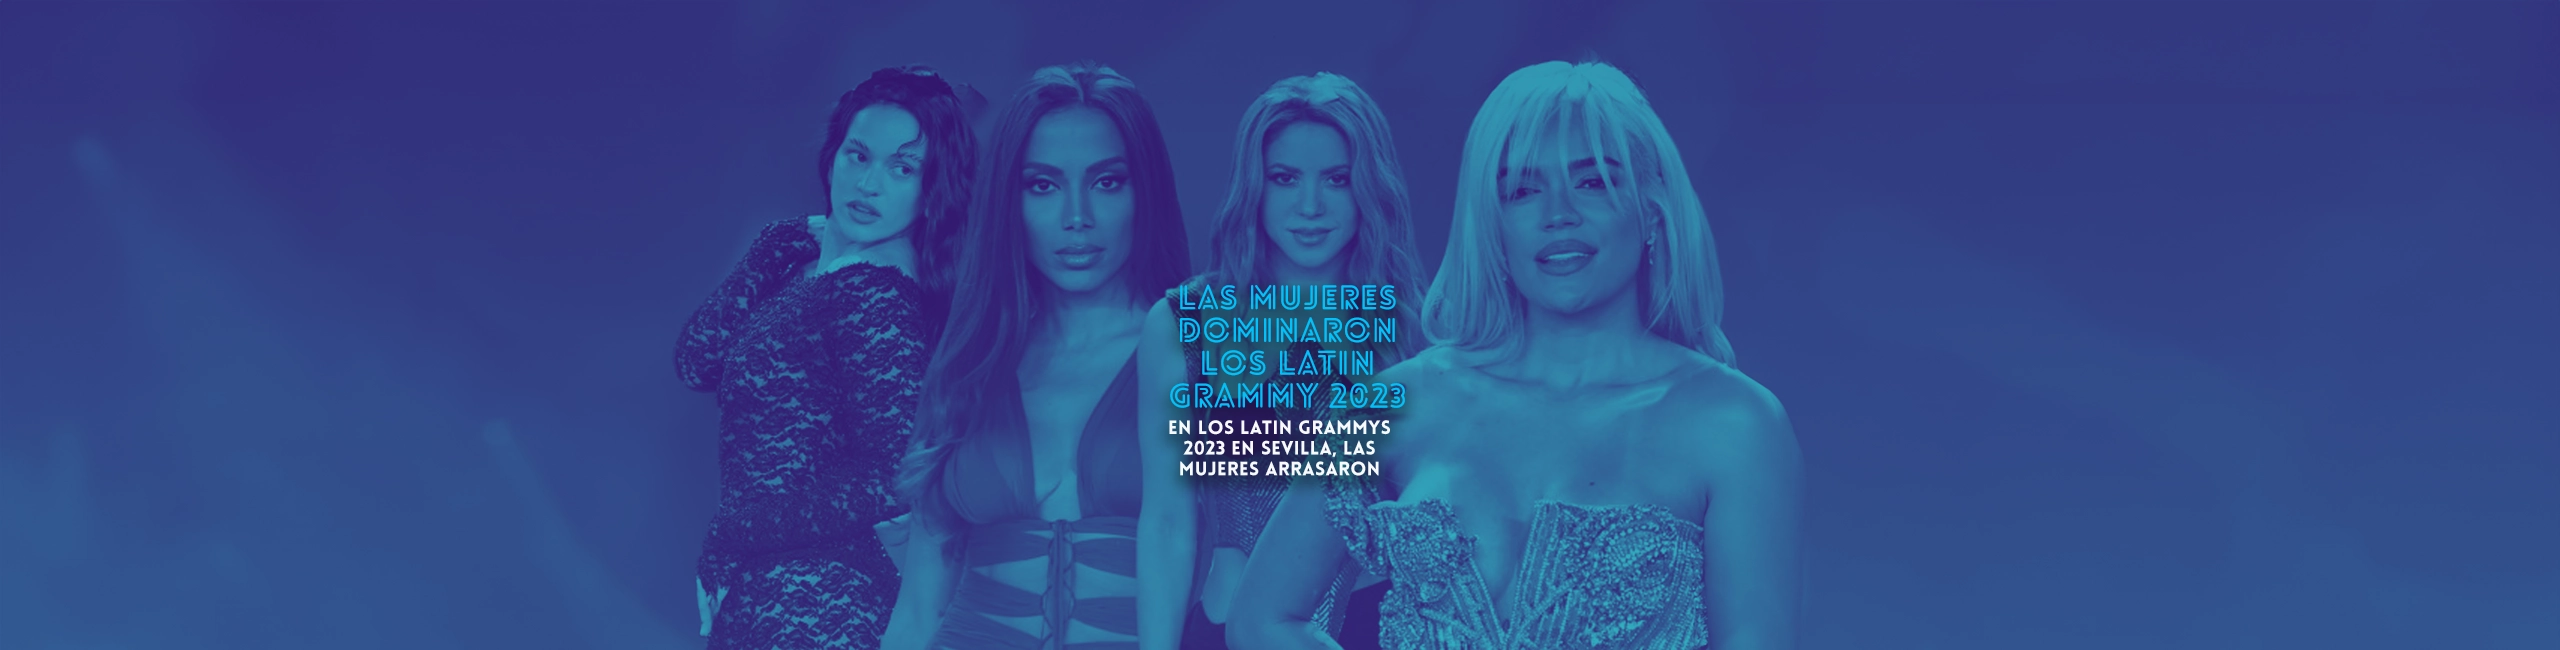 Las Mujeres Dominaron los Latin Grammy 2023″  “En los Latin Grammys 2023 en Sevilla, las mujeres arrasaron